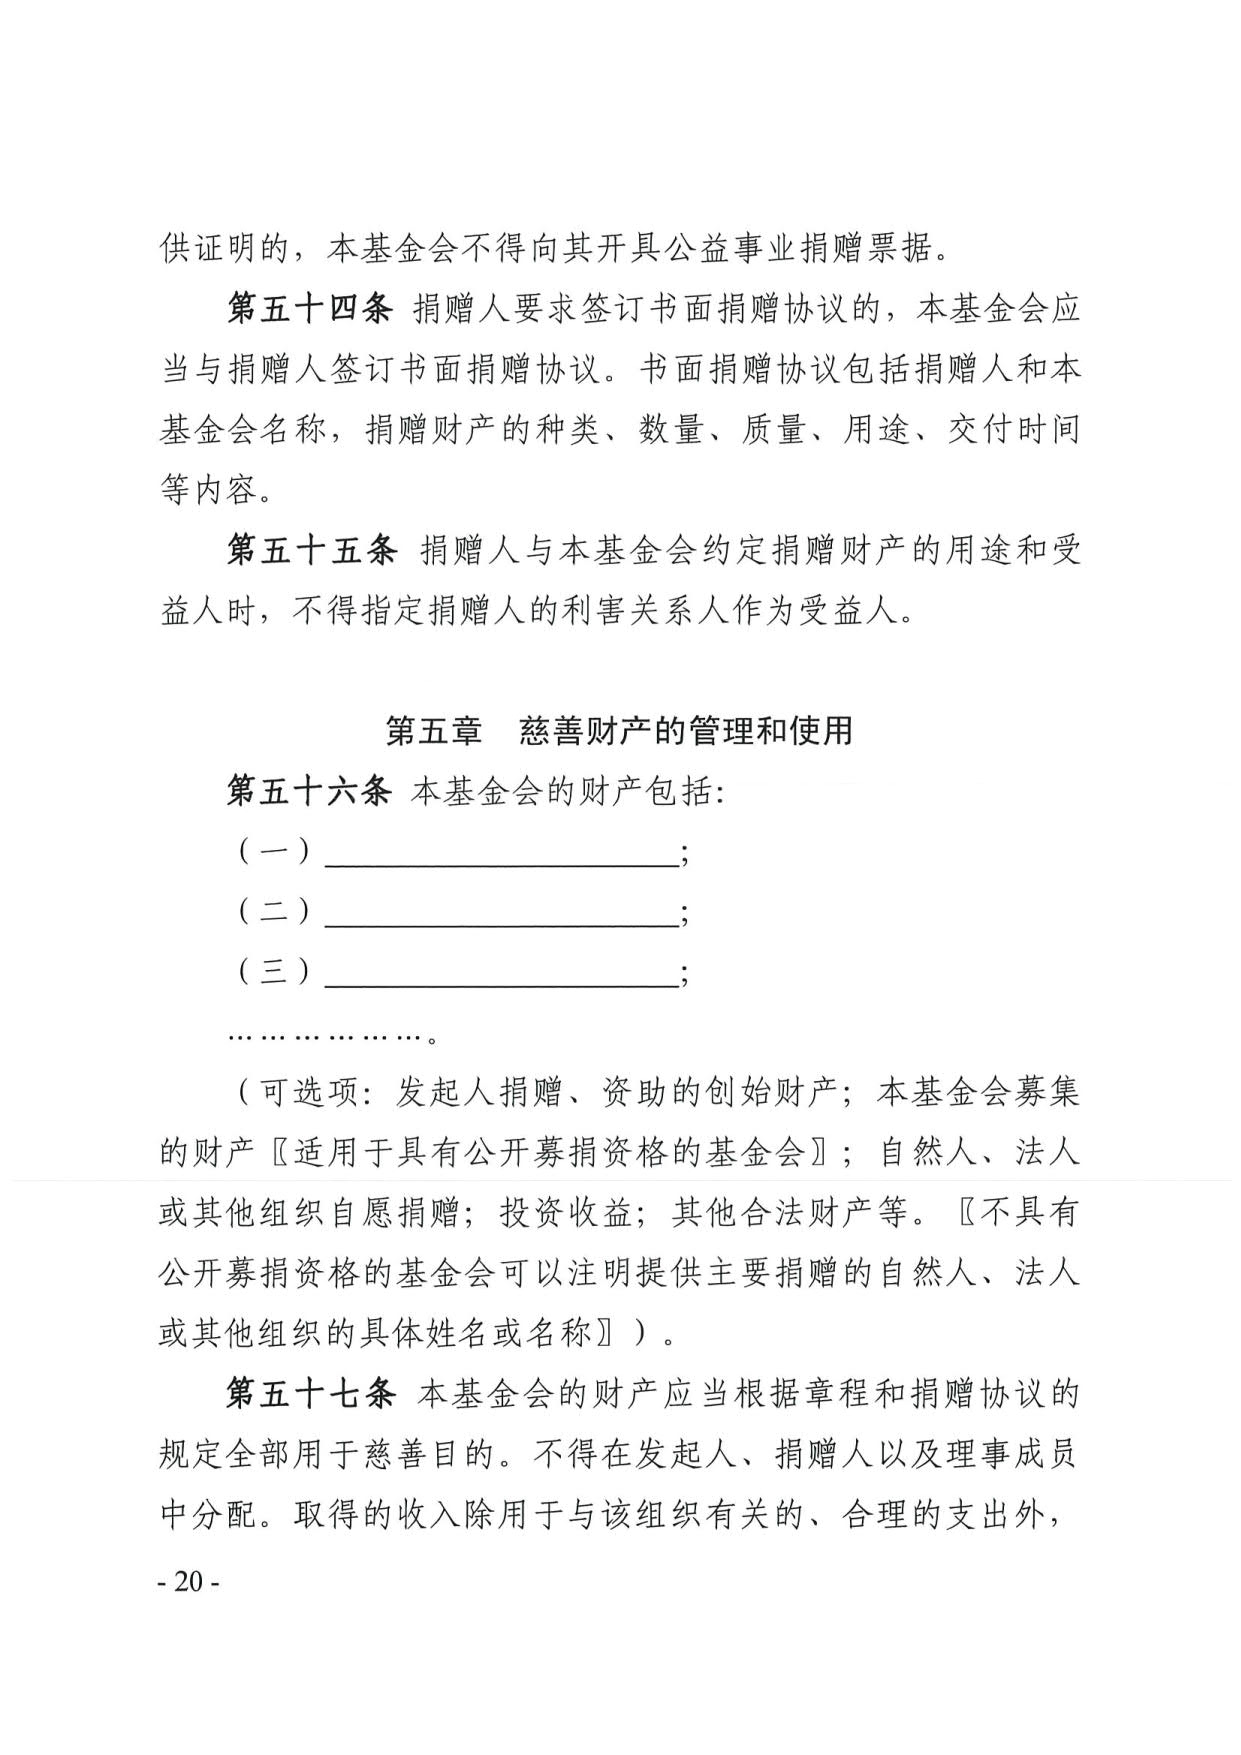 广东省民政厅关于印发《广东省基金会章程示范文本》的通知(4)_20.jpg